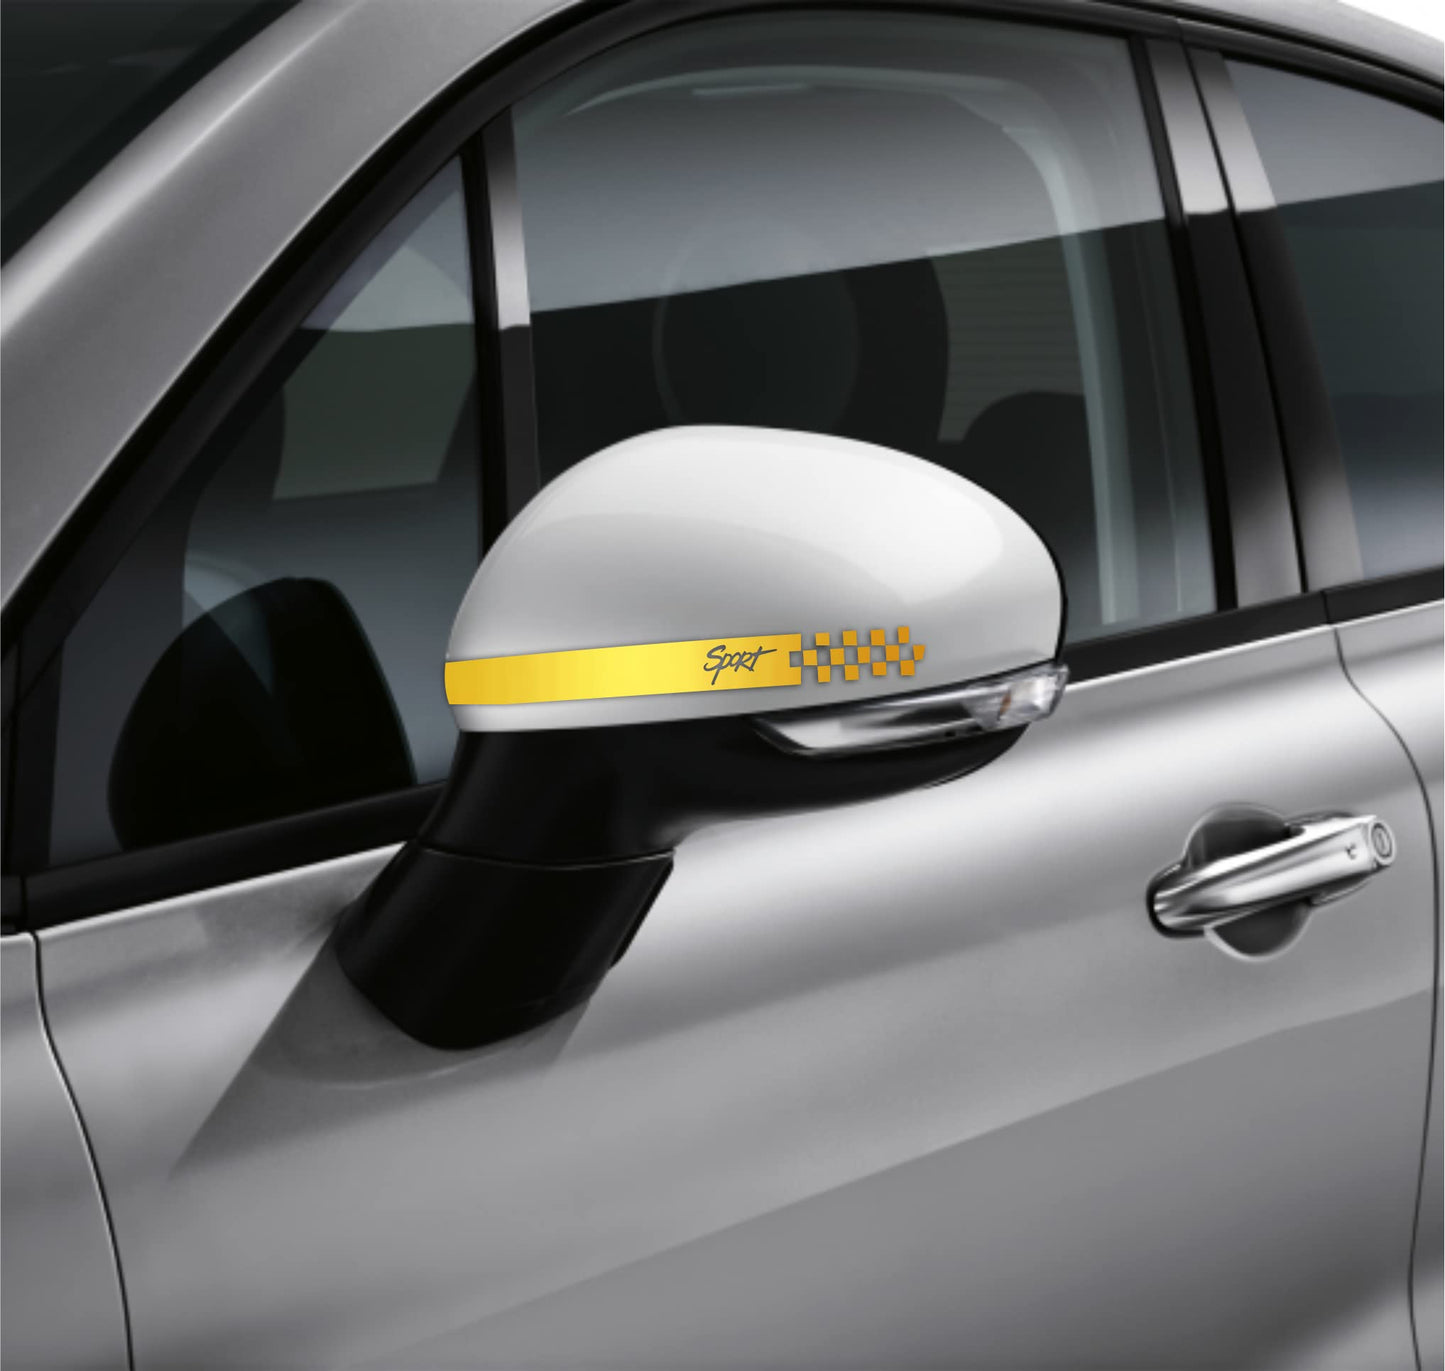 DualColorStampe Adesivi per Specchietti Retrovisori universali Car Stripes Strisce Design sportivo Confezione da 6 unità per Auto accessori auto stickers COD.0241 a €9.90 solo da DualColorStampe